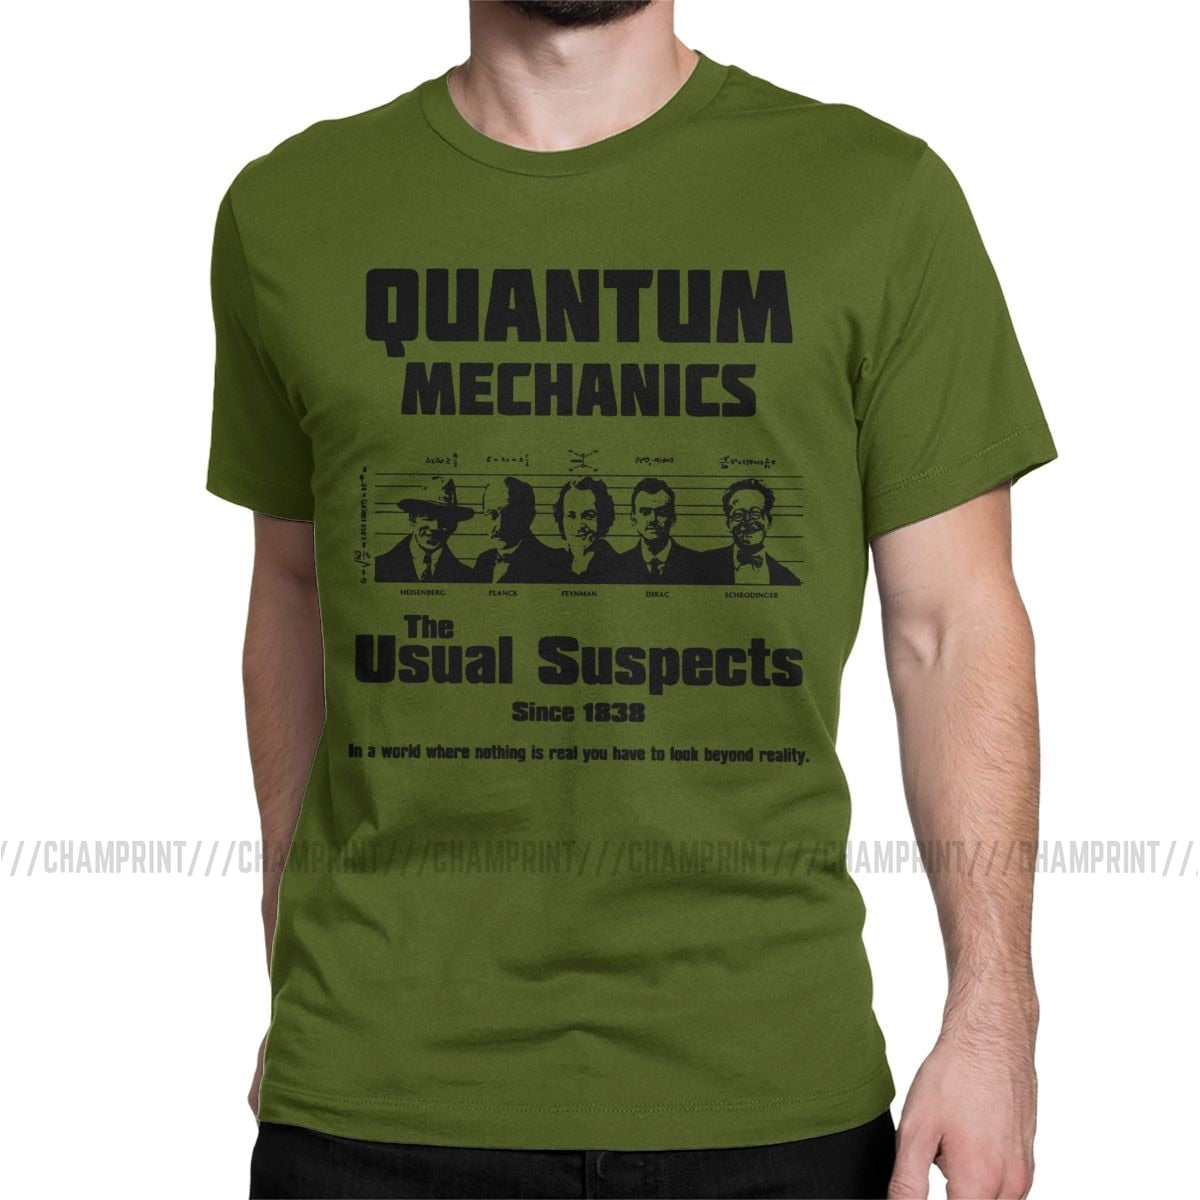 "The Usual Suspects" Quantum Mechanics T-Shirt